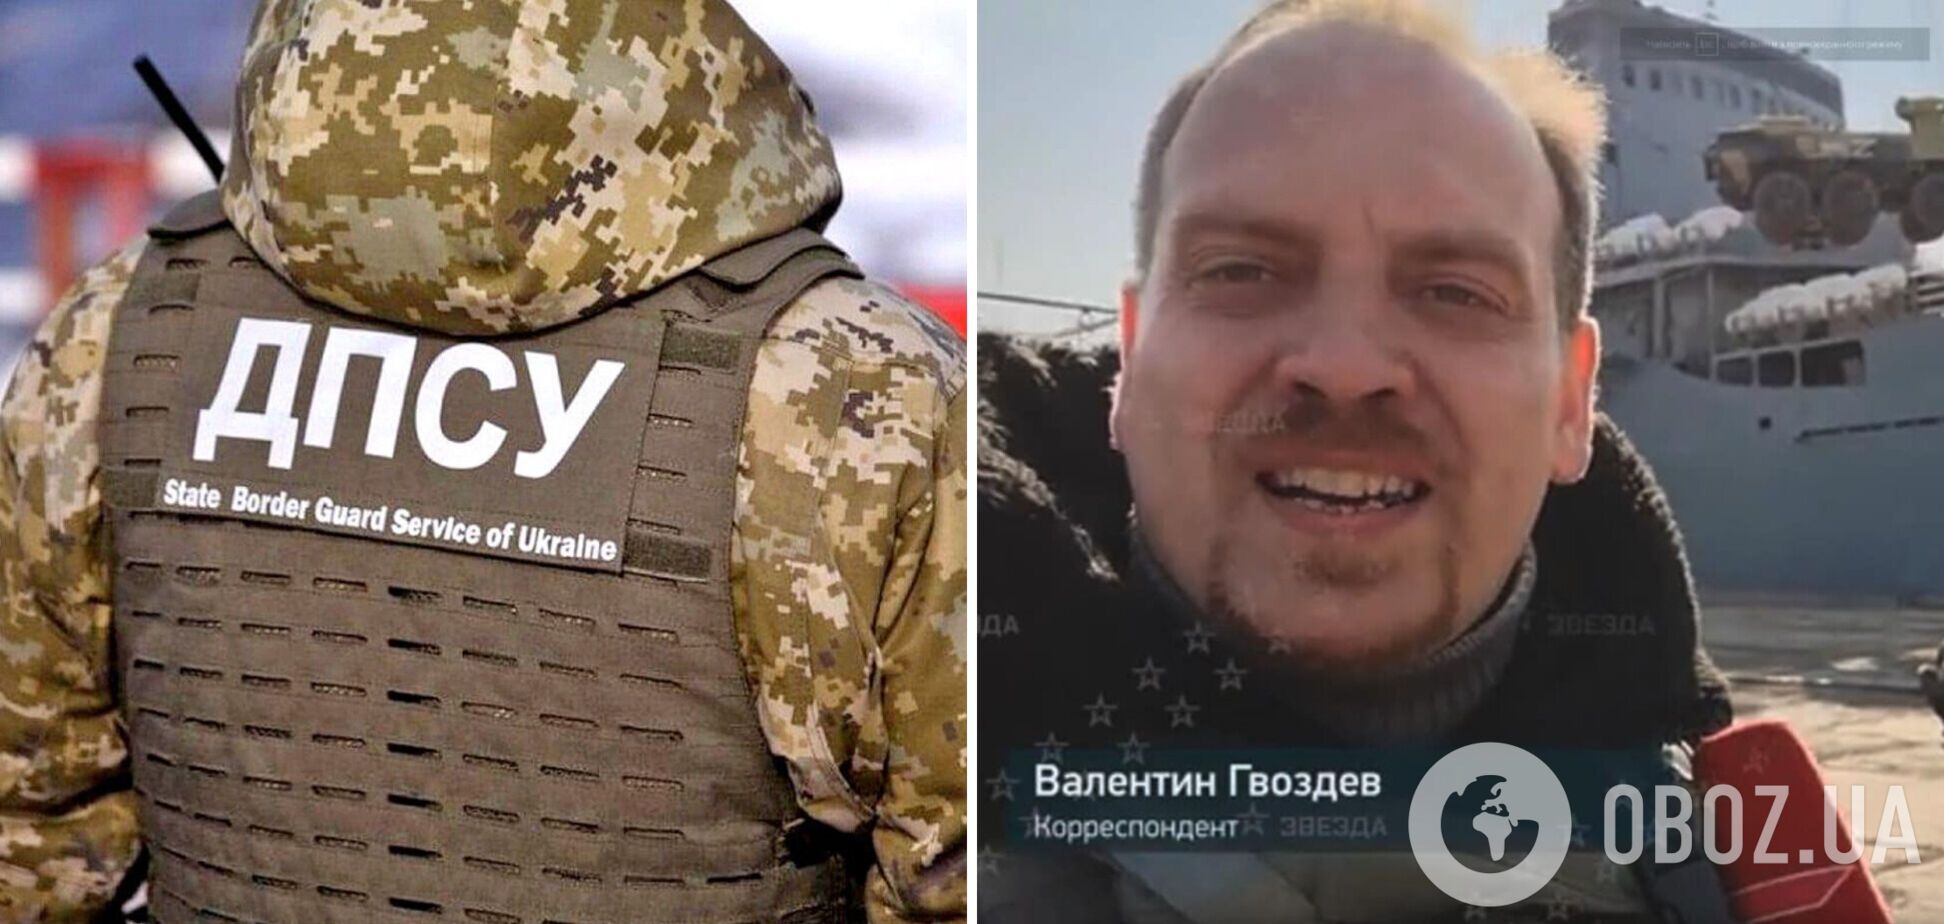 В Україні подякували пропагандисту Путіна, який 'допоміг' знищити корабель 'Орськ'. Фото